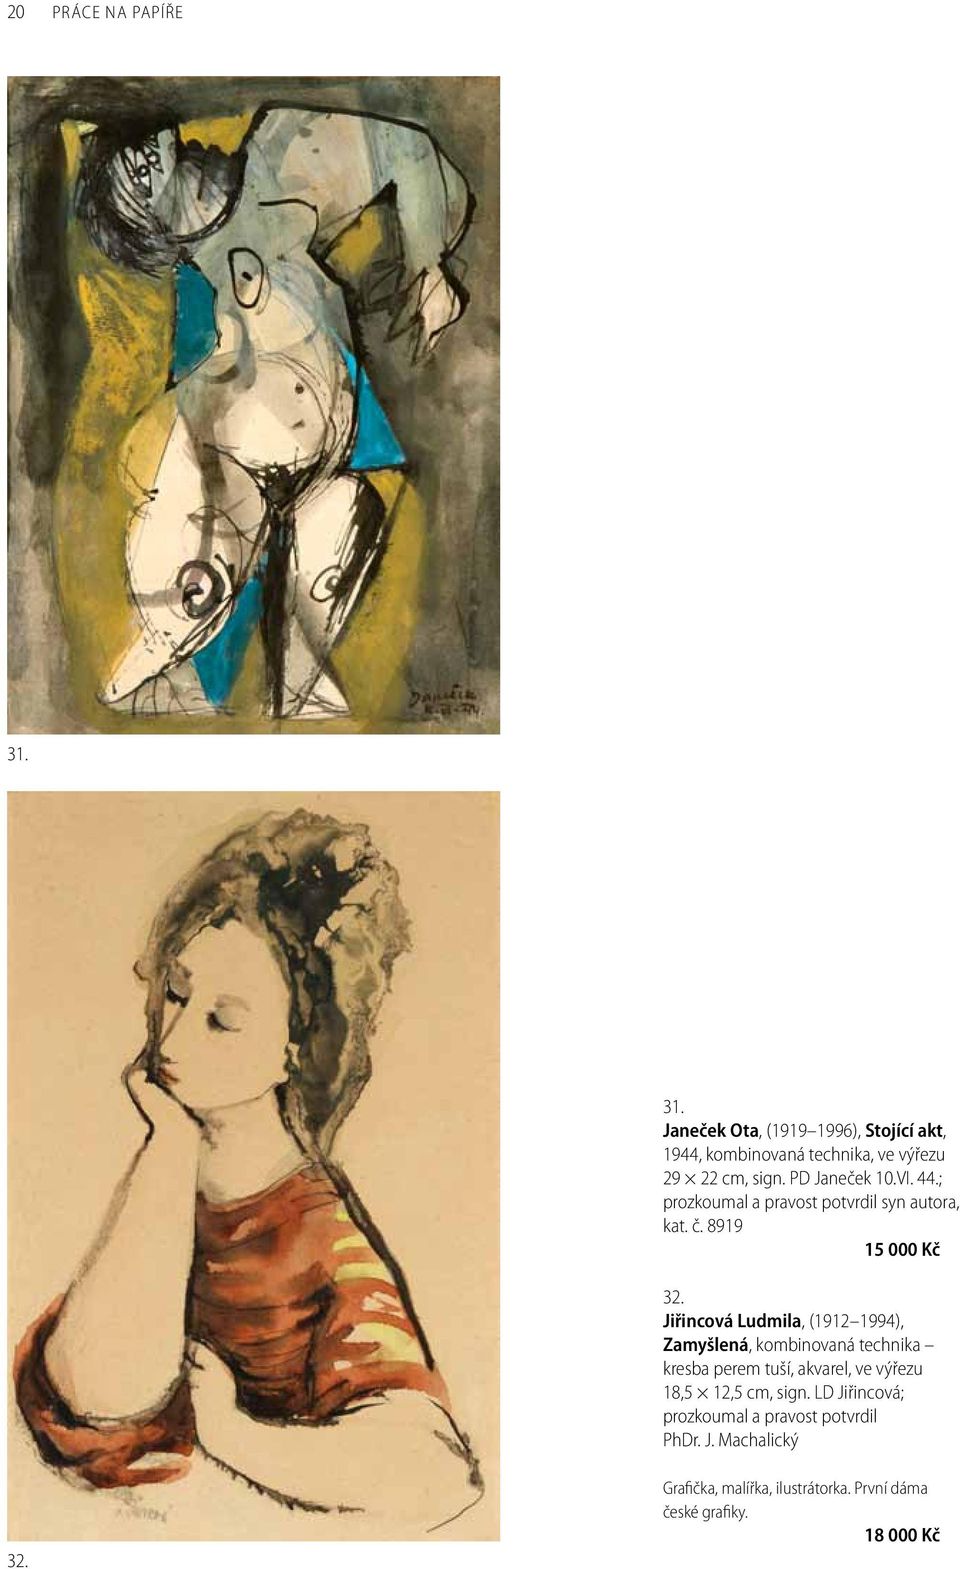 Jiřincová Ludmila, (1912 1994), Zamyšlená, kombinovaná technika kresba perem tuší, akvarel, ve výřezu 18,5 12,5 cm,